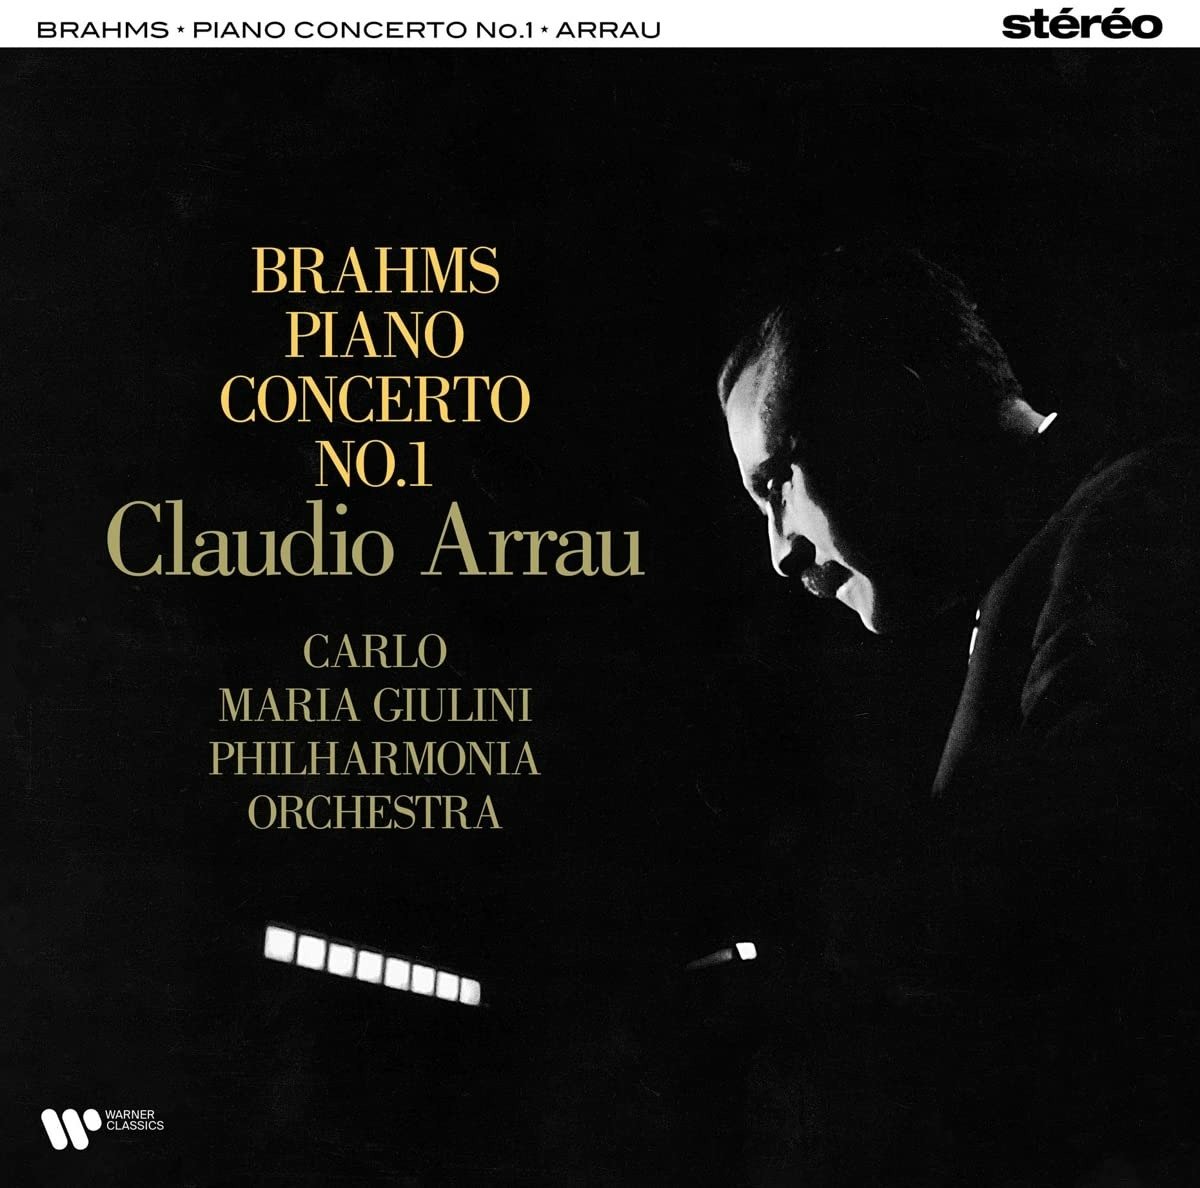 ARRAU, CLAUDIO - BRAHMS PIANO CONCERTO NO. 1, Vinyl